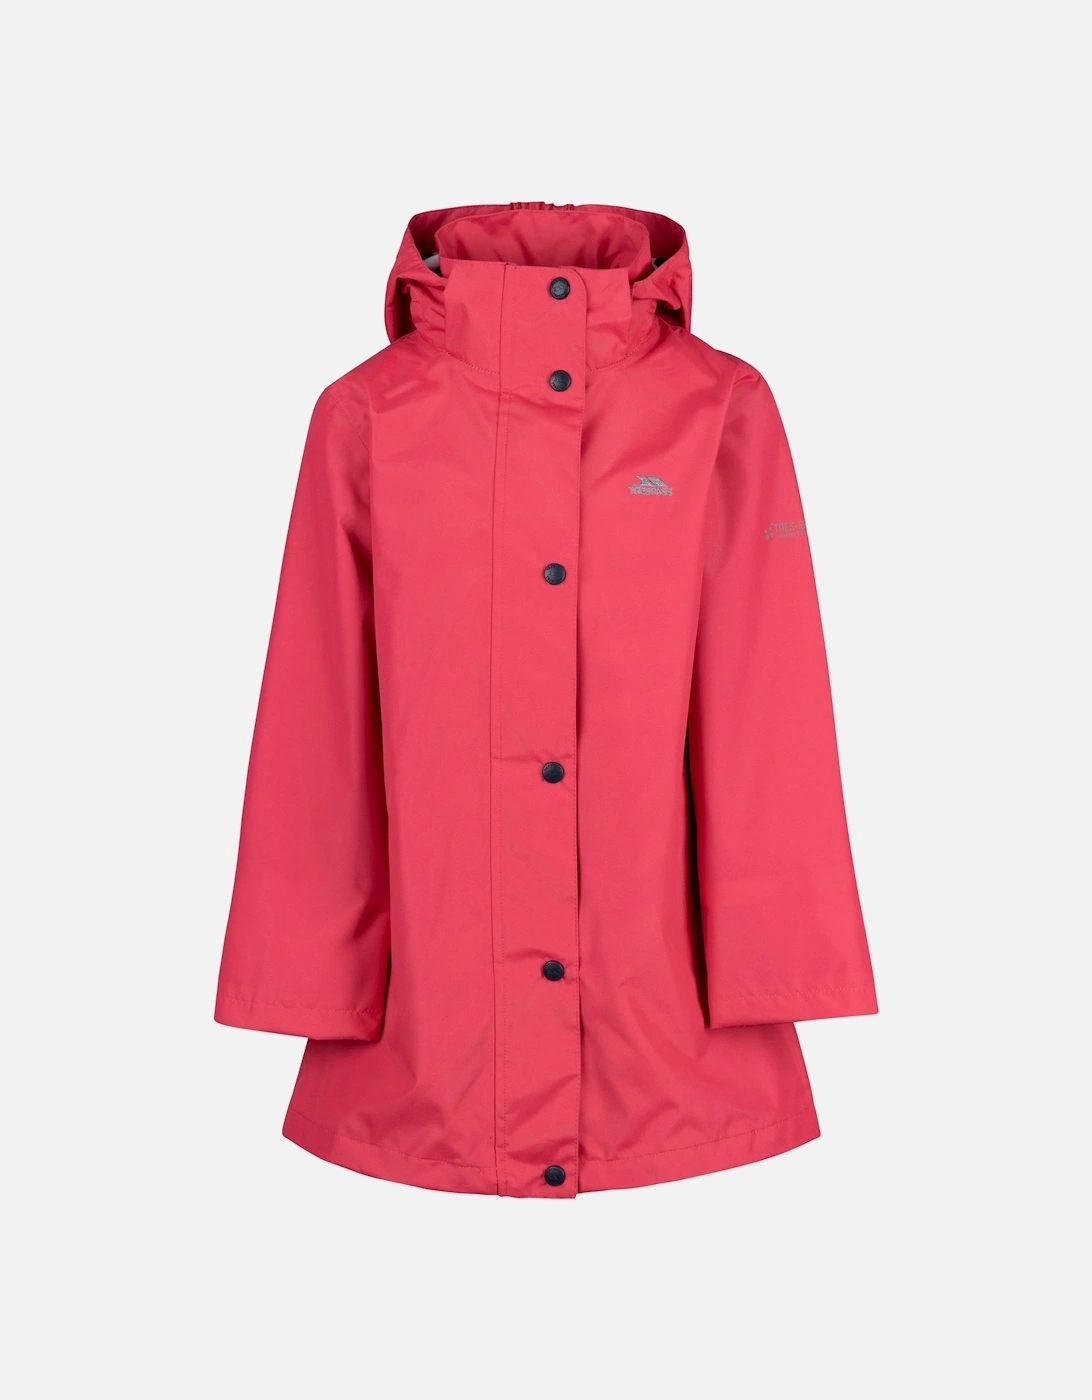 Girls Sentimental Waterproof Jacket, 4 of 3